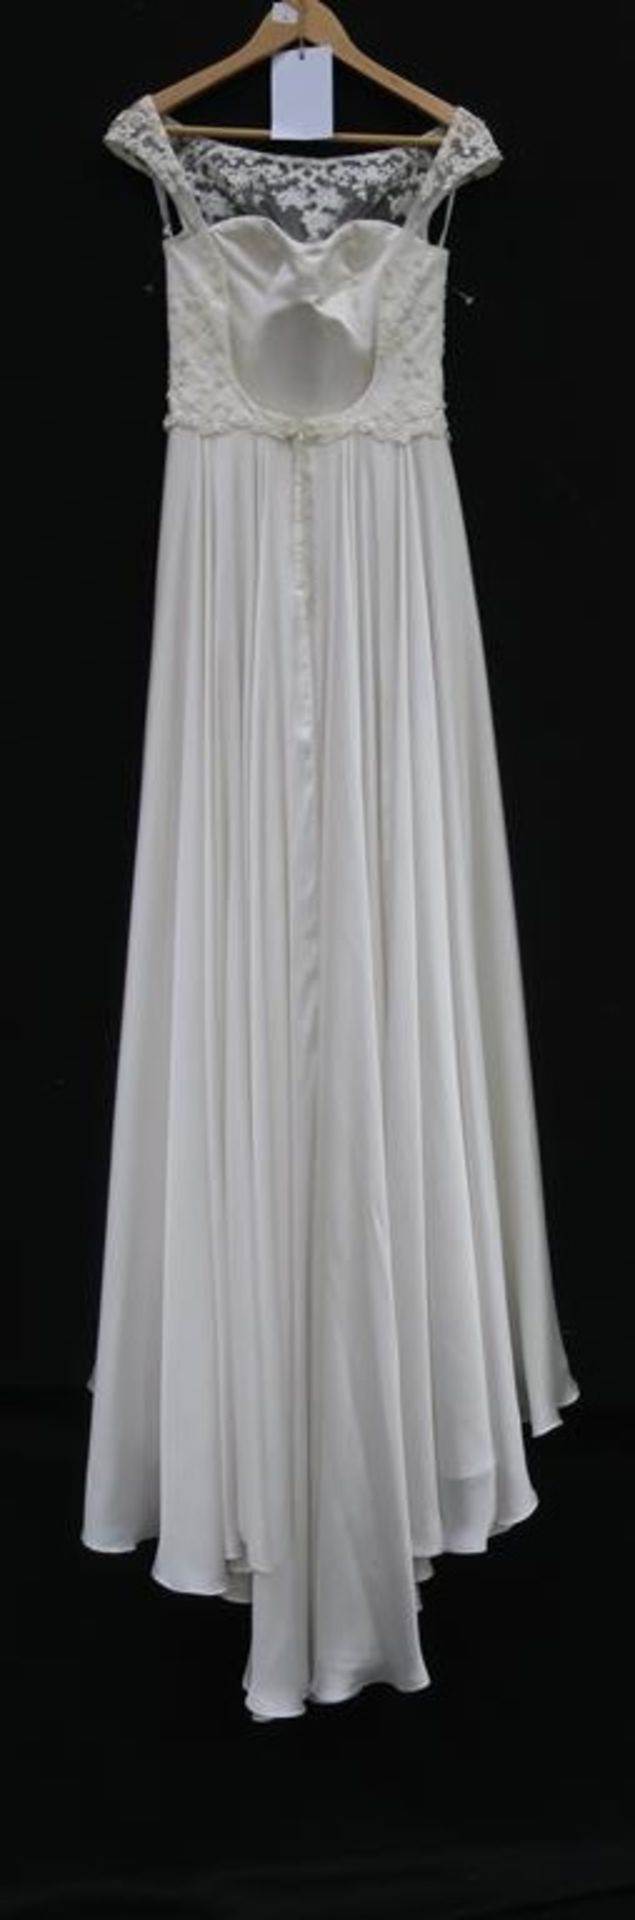 Jack Sullivan Bridal wedding dress - Image 6 of 8